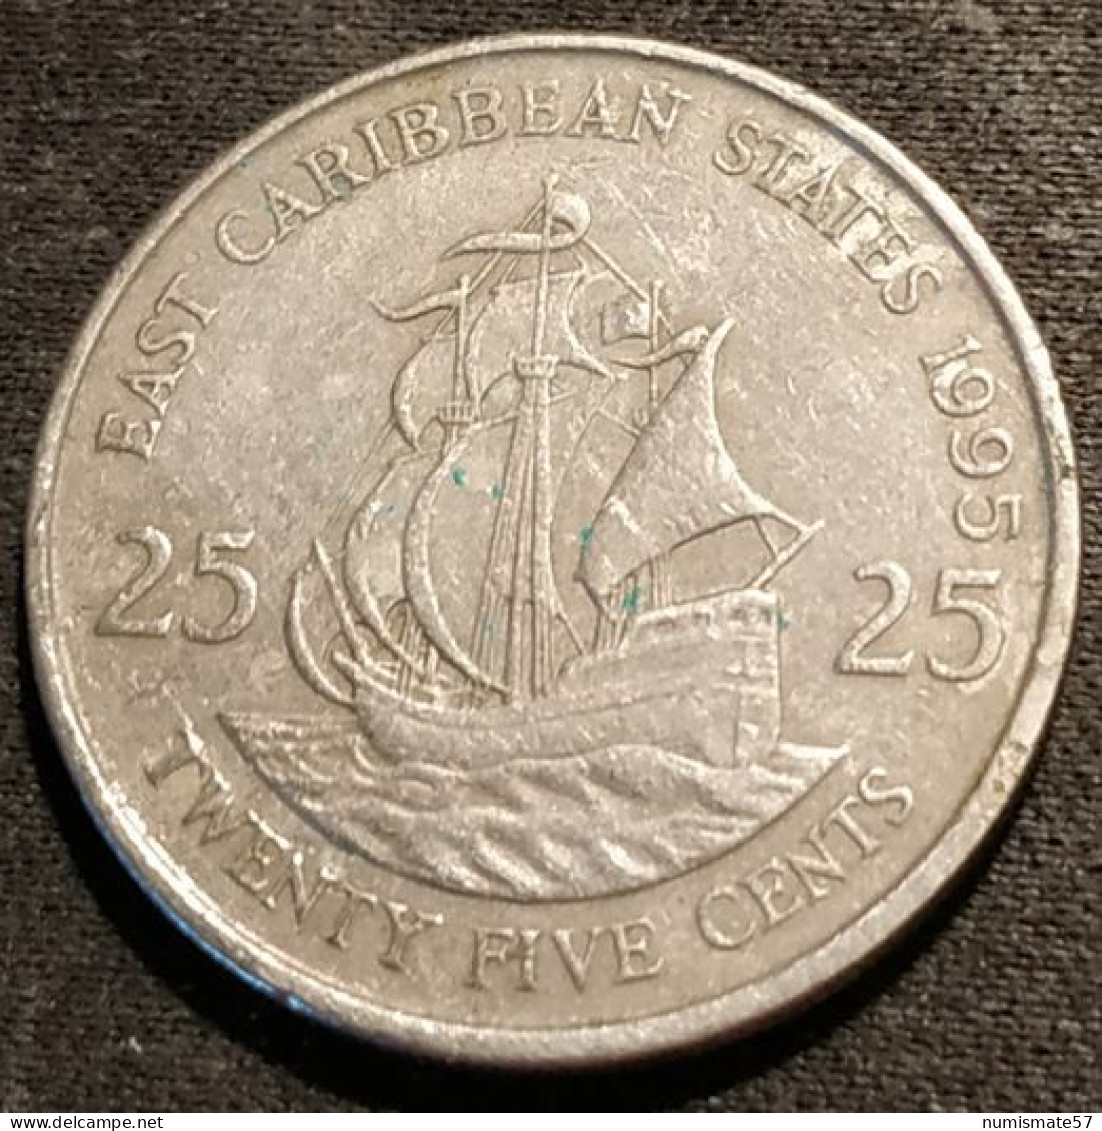 EAST CARIBBEAN STATES - 25 CENTS 1995 - Elizabeth II - 2e Effigie - KM 14 - ( Caraibes ) - Caraïbes Orientales (Etats Des)